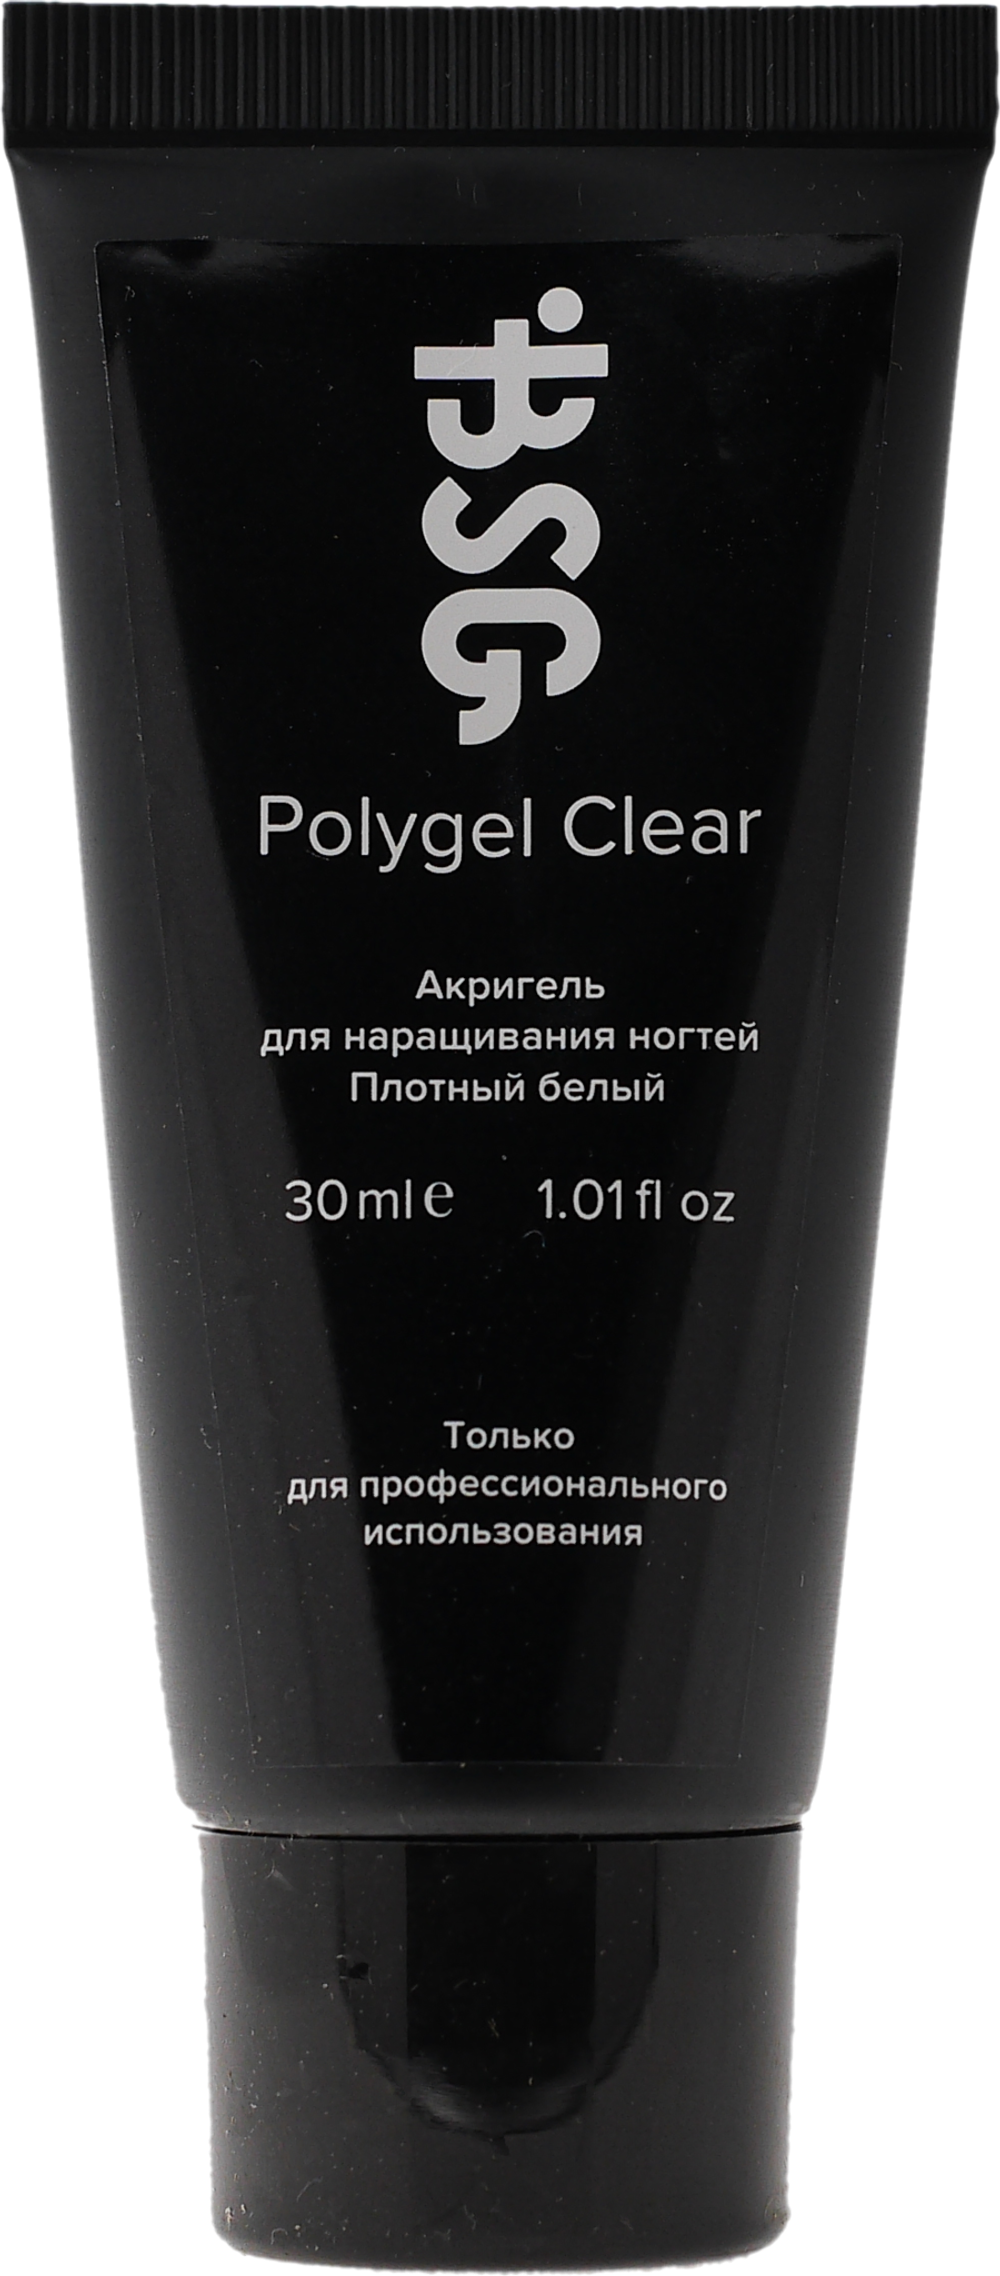 Polygel Clear - Акригель БЕЛЫЙ для наращивания ногтей